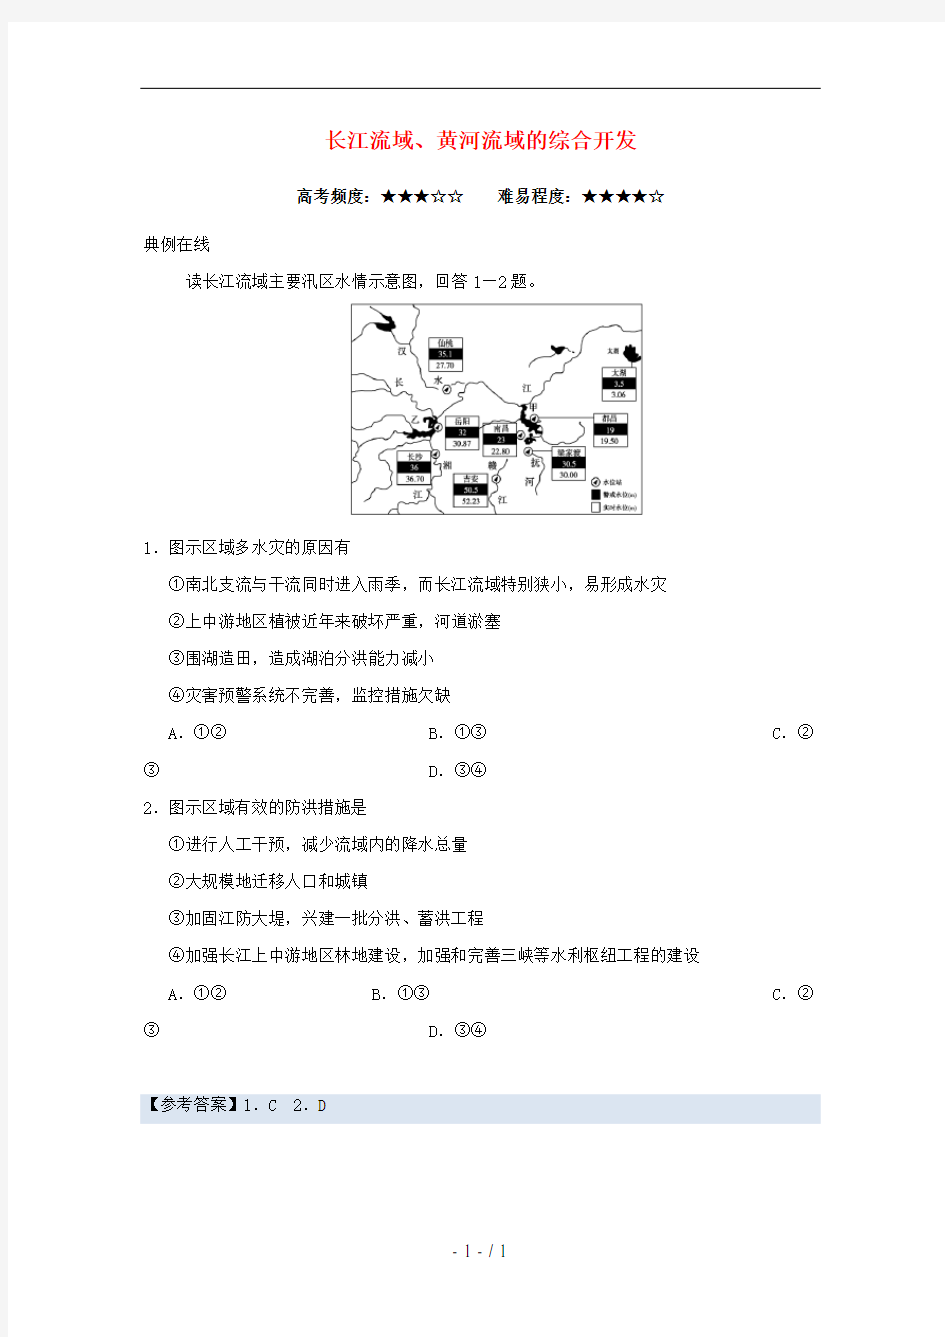 2018高中地理每日一题长江流域、黄河流域的综合开发